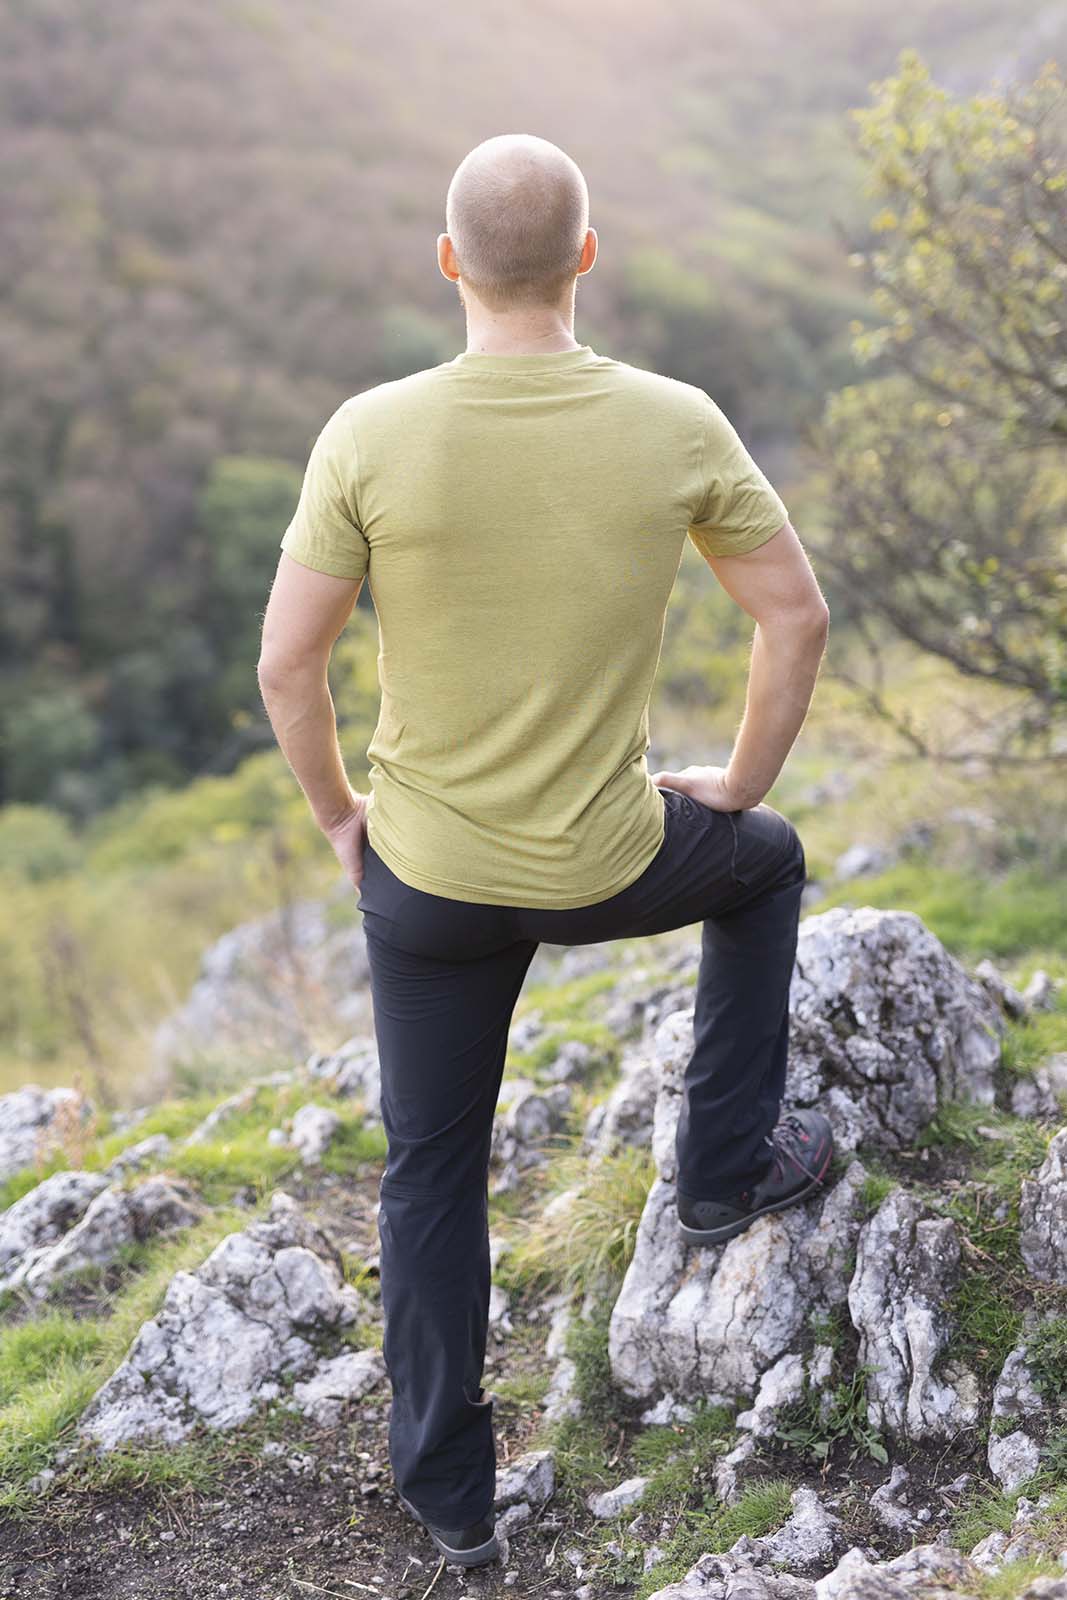 Ein Mann steht aufm Berg. Hat ein kurzarm Tshirt aus Merino der Marke KALLYS an.